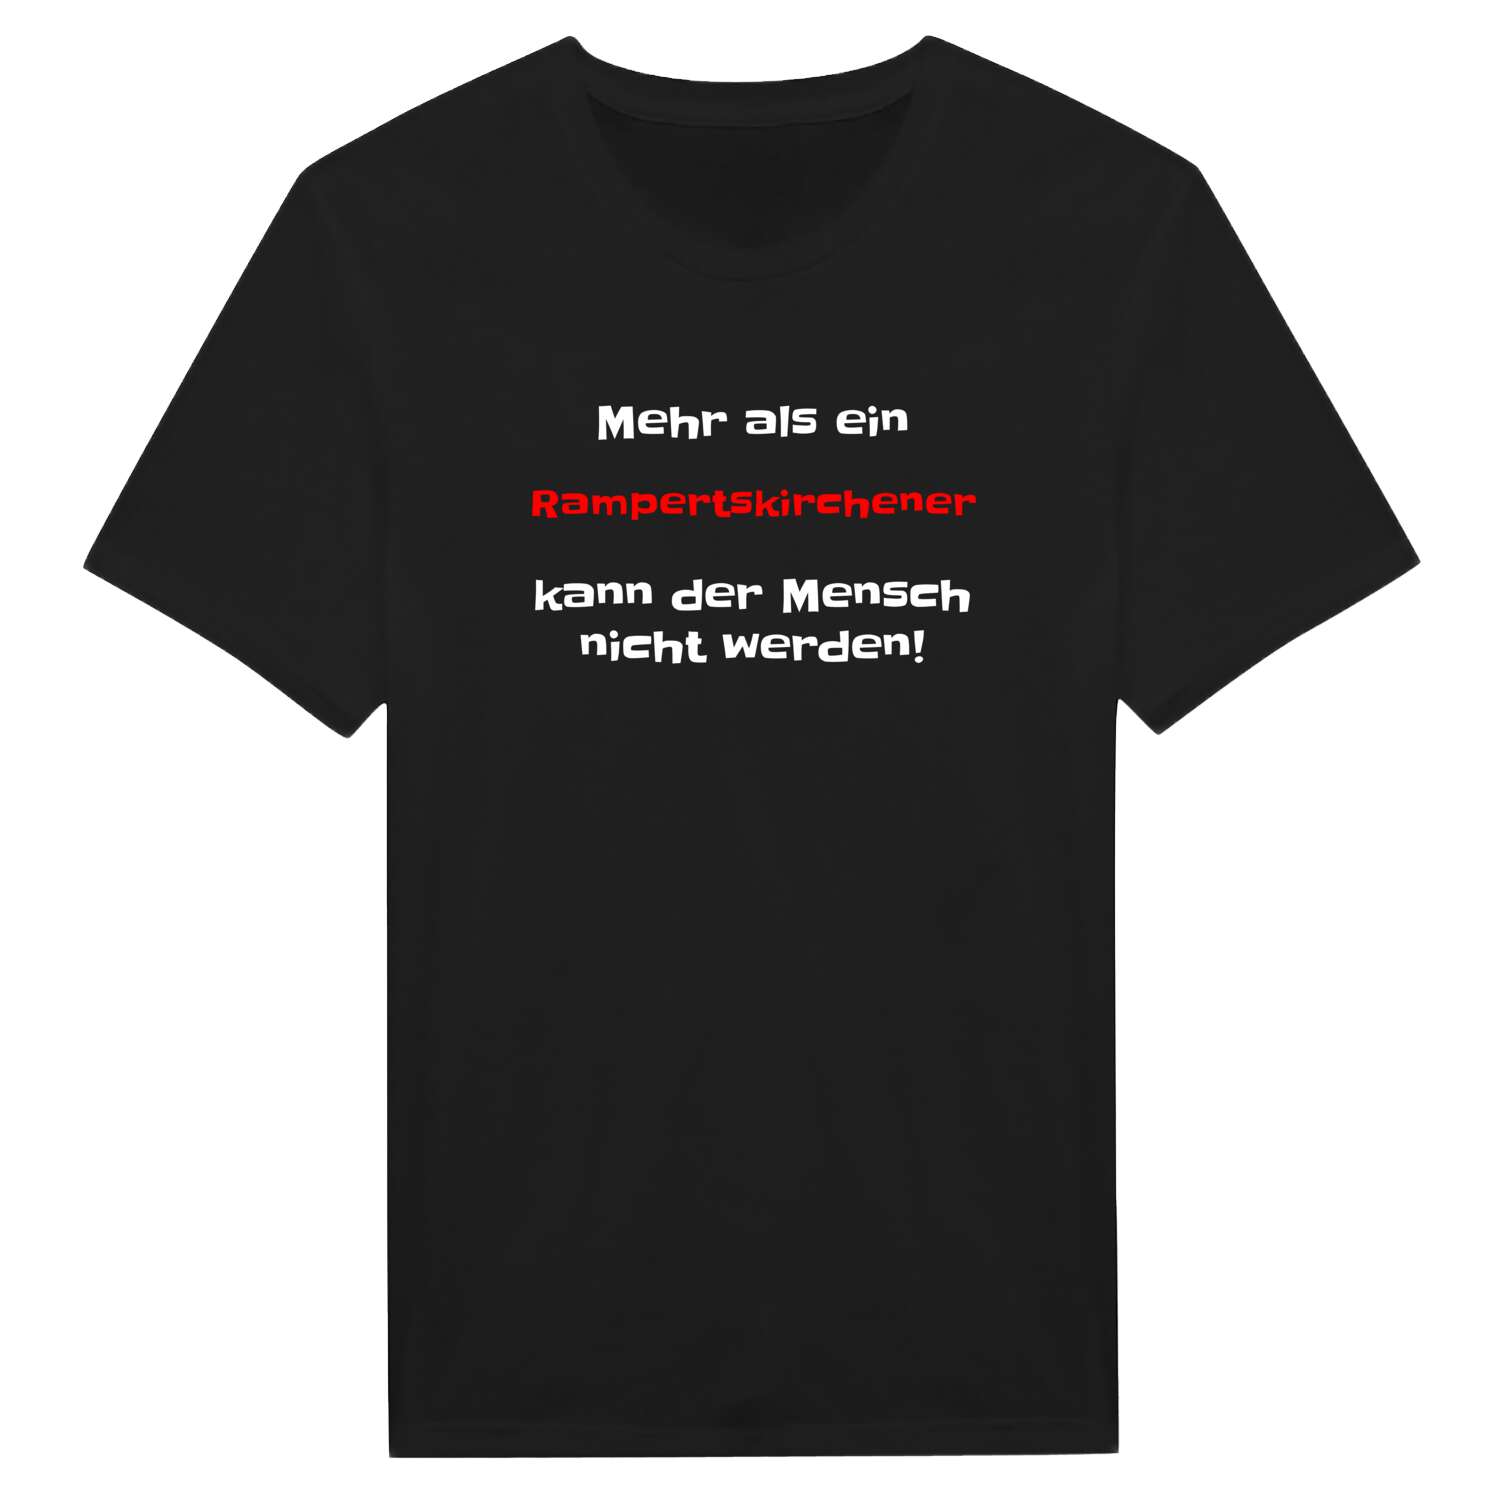 Rampertskirchen T-Shirt »Mehr als ein«